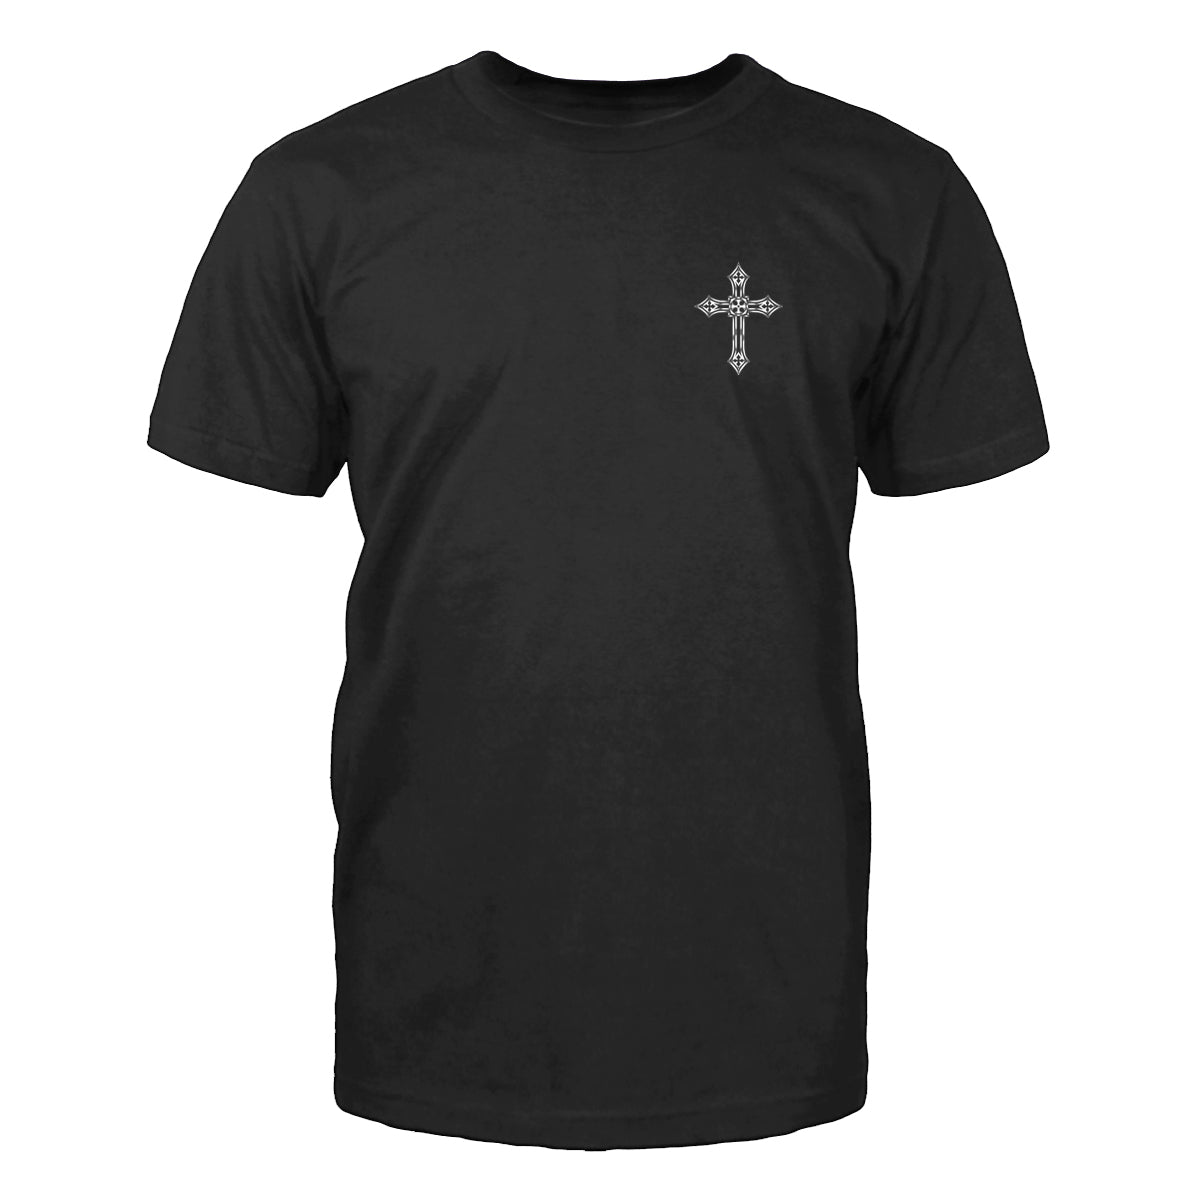 A Christian Man Men's T-Shirt